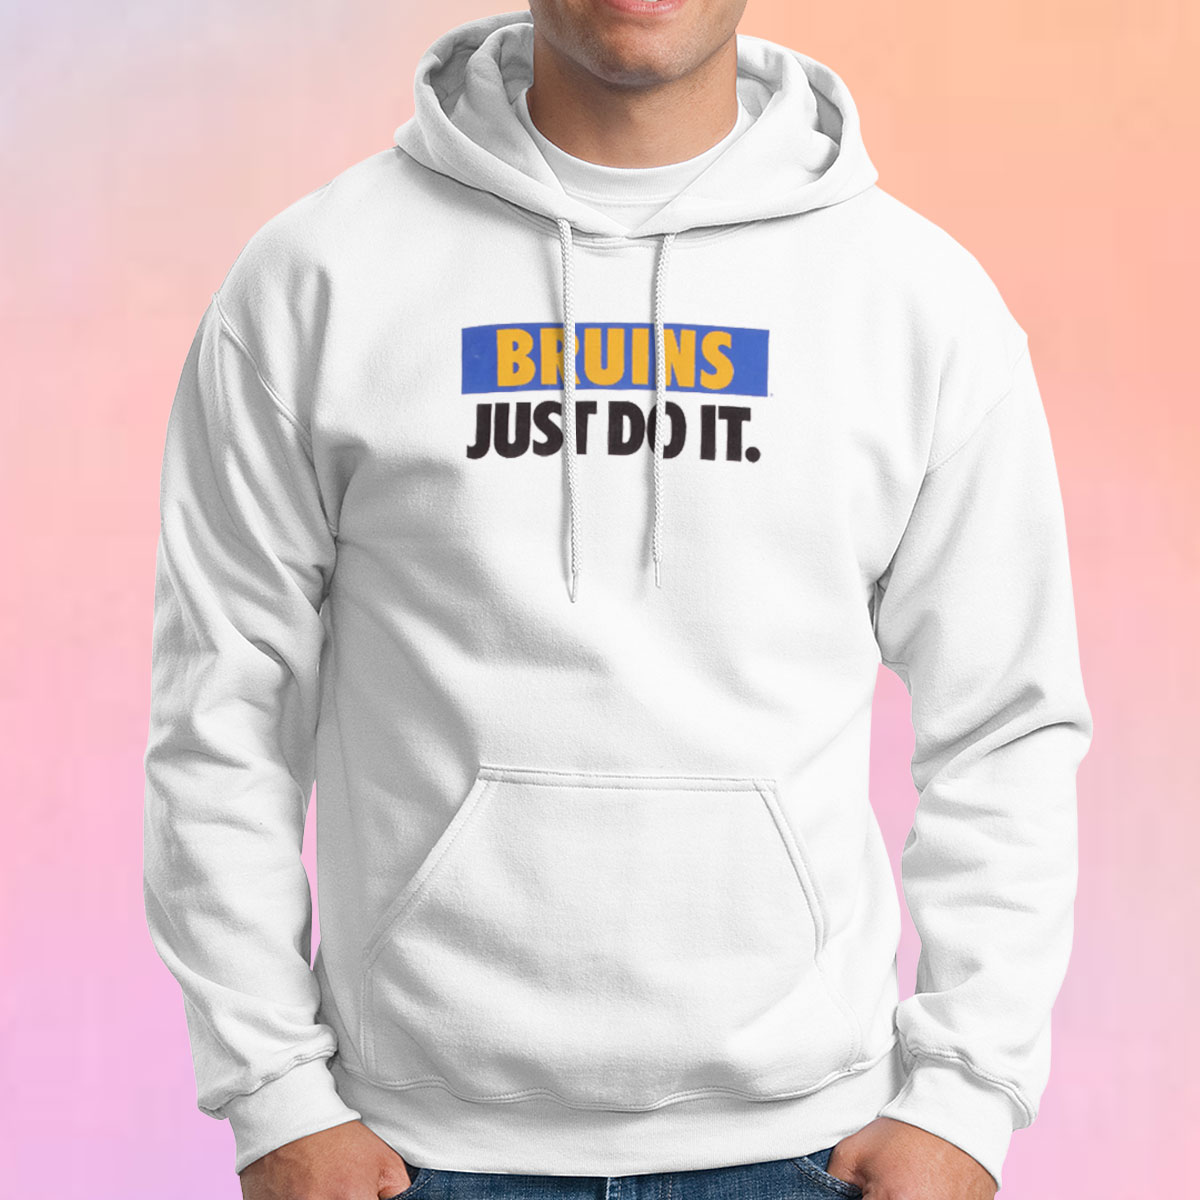 welzijn invoegen referentie Get Buy Vintage Nike UCLA Bruins Hoodie | Couldteesdesign.com